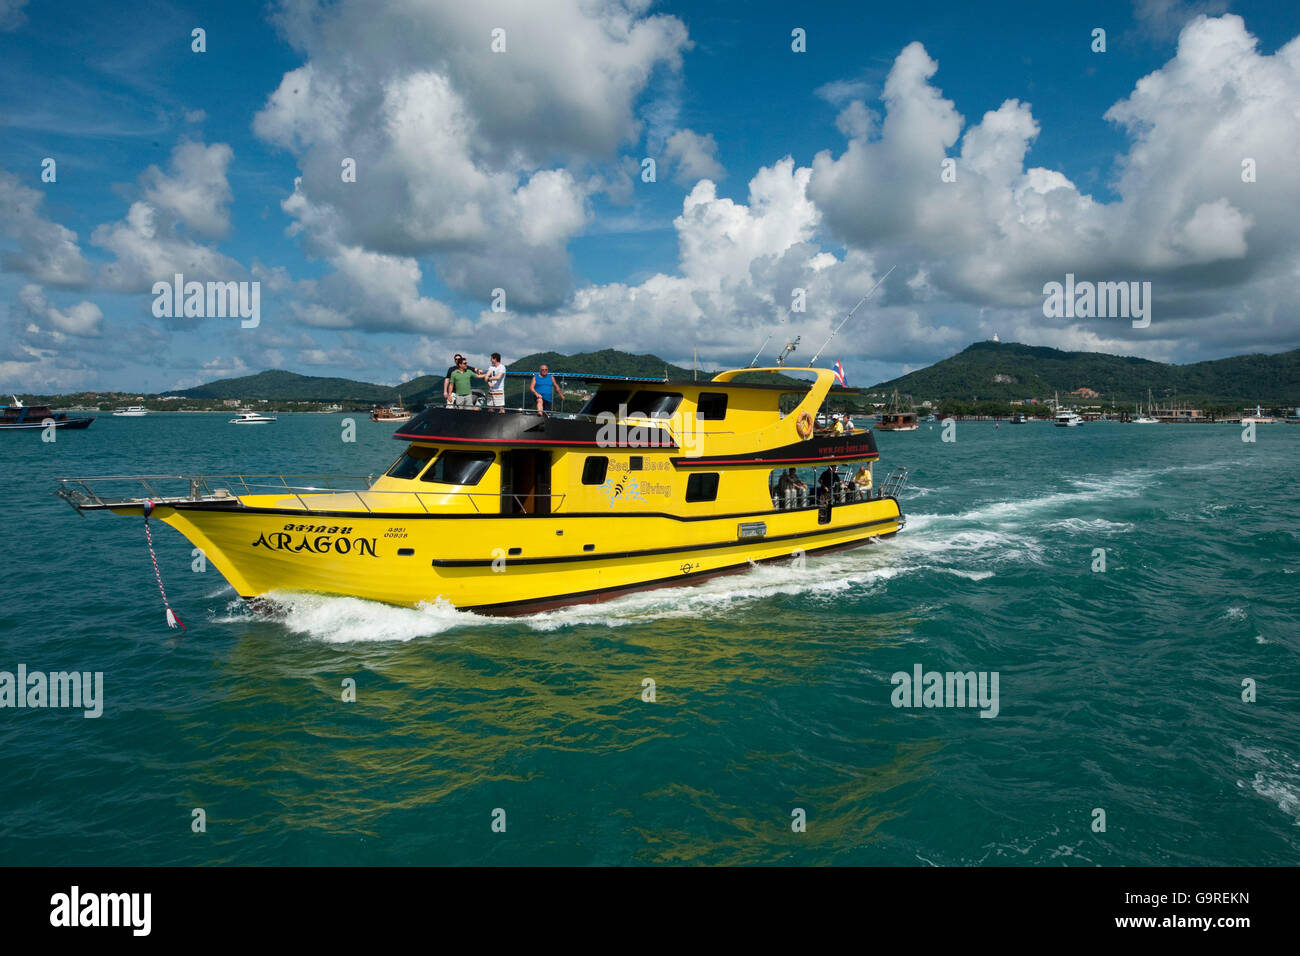 Crucero por buzos, liveaboard para bucear, sumergibles, Similan, islas del Mar de Andaman, Phuket, Tailandia Foto de stock